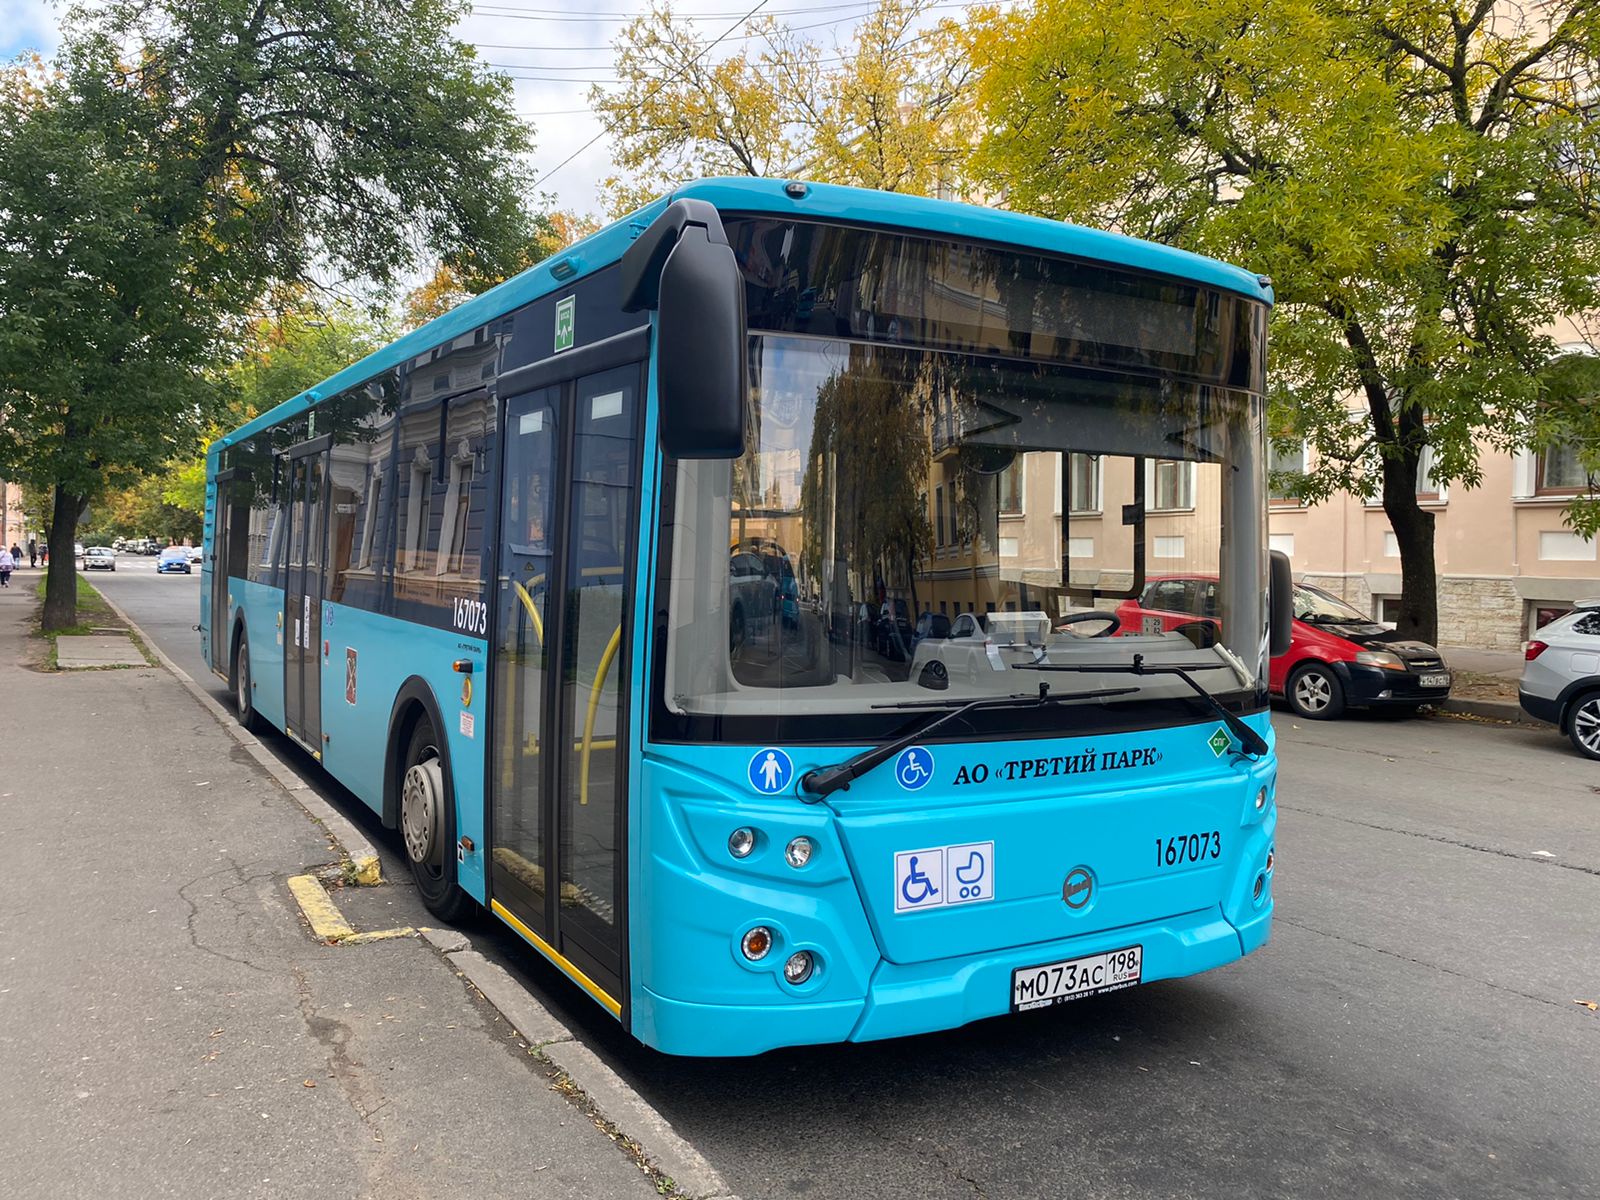 С 1 апреля 2022 года часть автобусов коммерческих маршрутов АО «Третий Парк» перестает курсировать в рамках новой модели транспортного обслуживания Петербурга.